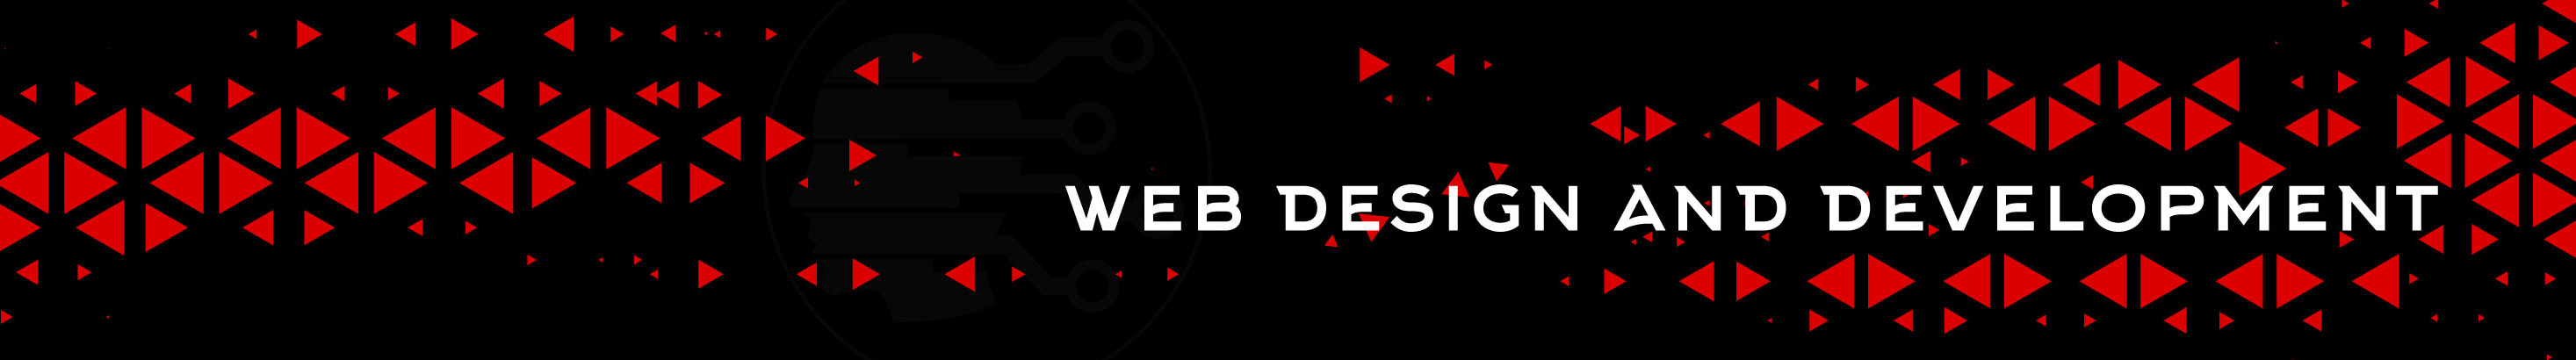 Astudio Web Company's profile banner